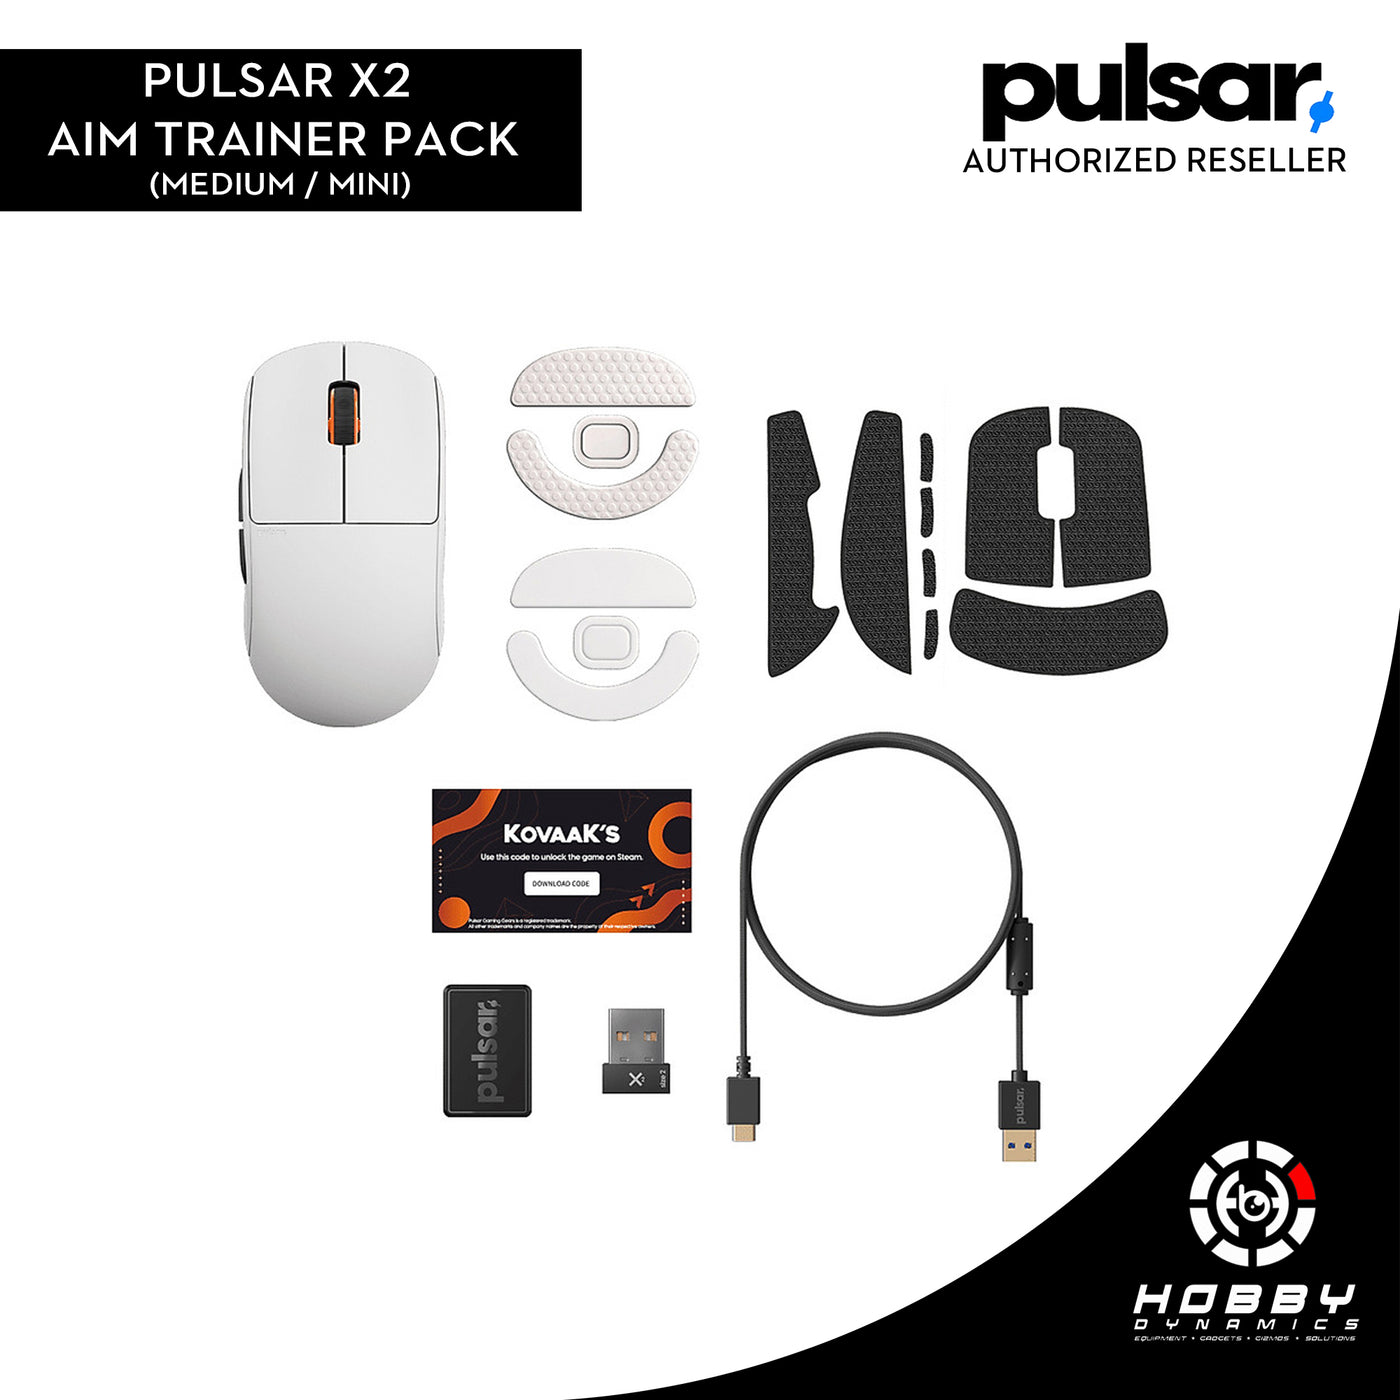 Pulsar X2 Gaming Mouse [Aim Trainer Pack] (Medium/Mini)